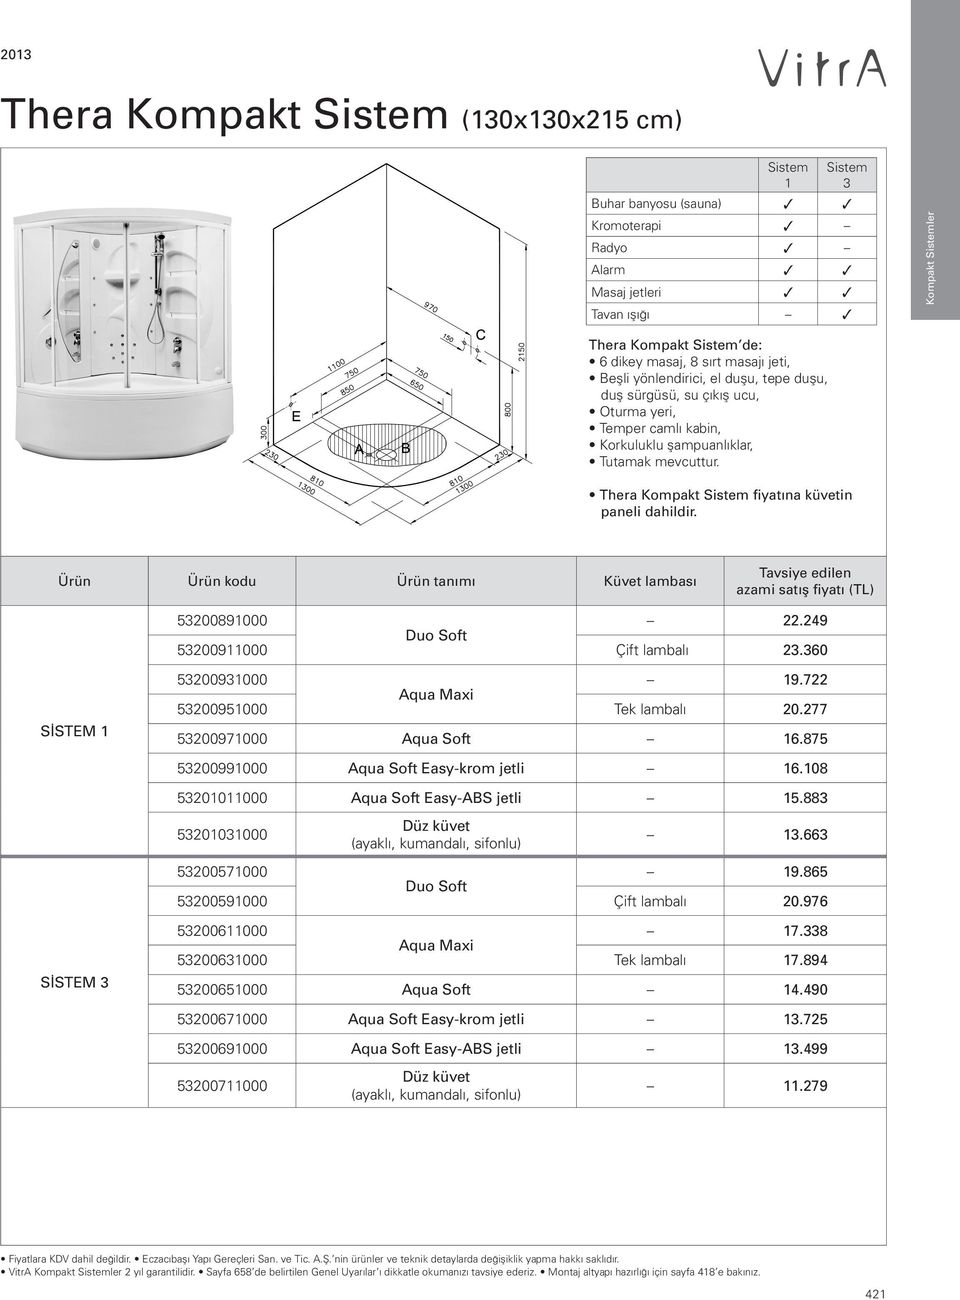 Thera Kompakt Sistem fiyat na küvetin paneli dahildir. Küvet lambası Tavsiye edilen azami 53200891000 22.249 Duo Soft 53200911000 Çift lambalı 23.360 SİSTEM 1 53200931000 19.